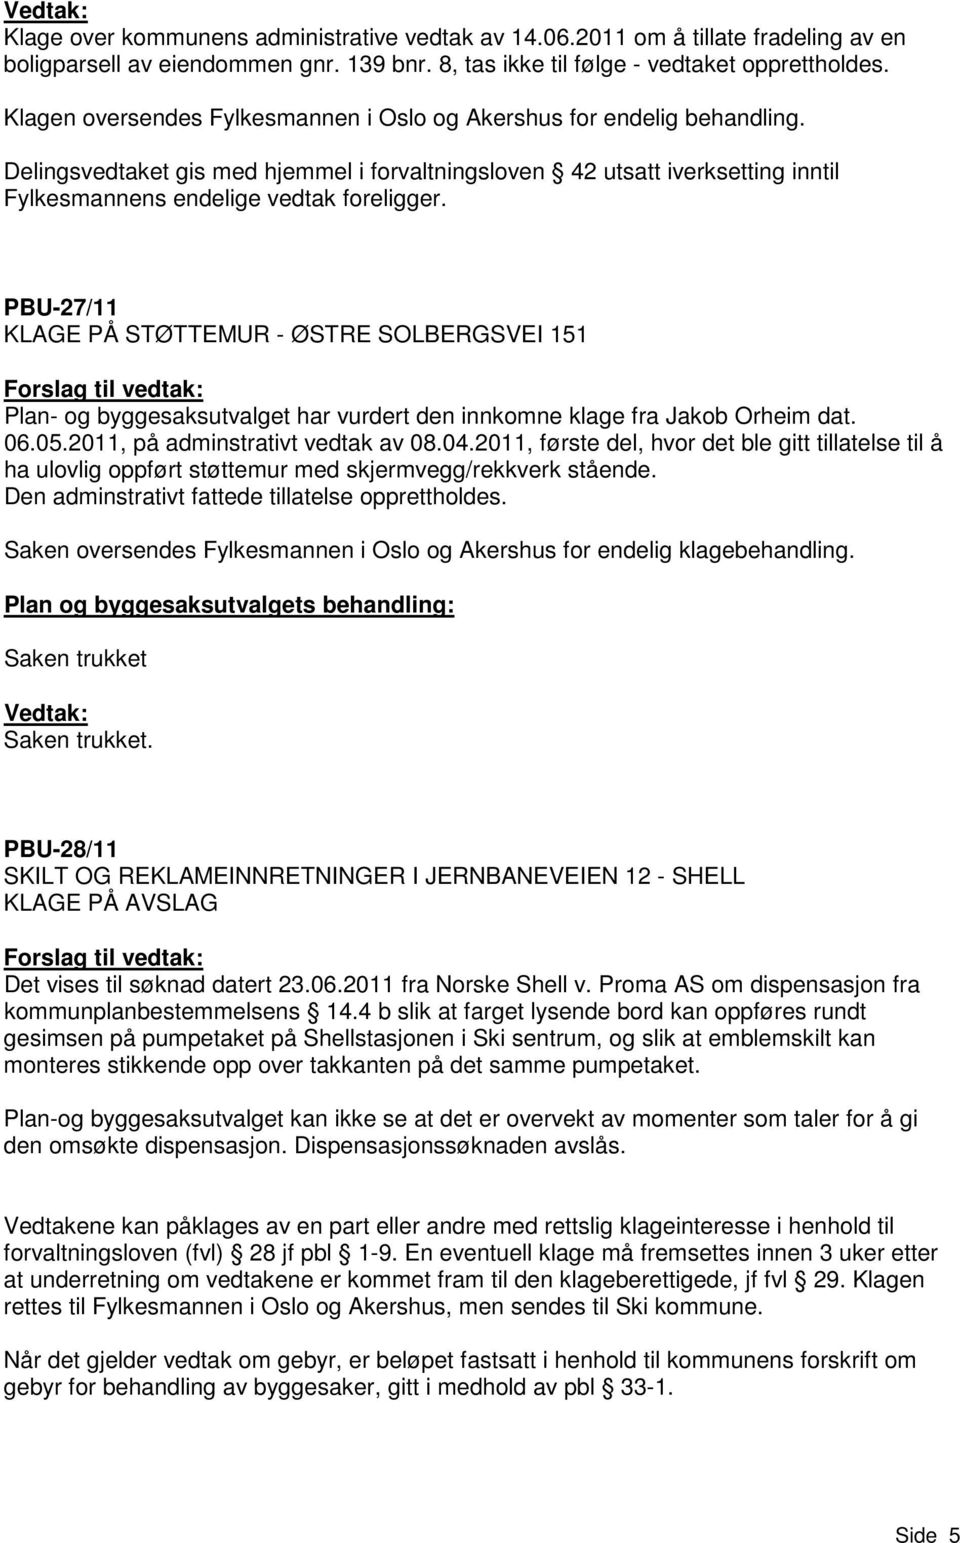 PBU-27/11 KLAGE PÅ STØTTEMUR - ØSTRE SOLBERGSVEI 151 Plan- og byggesaksutvalget har vurdert den innkomne klage fra Jakob Orheim dat. 06.05.2011, på adminstrativt vedtak av 08.04.